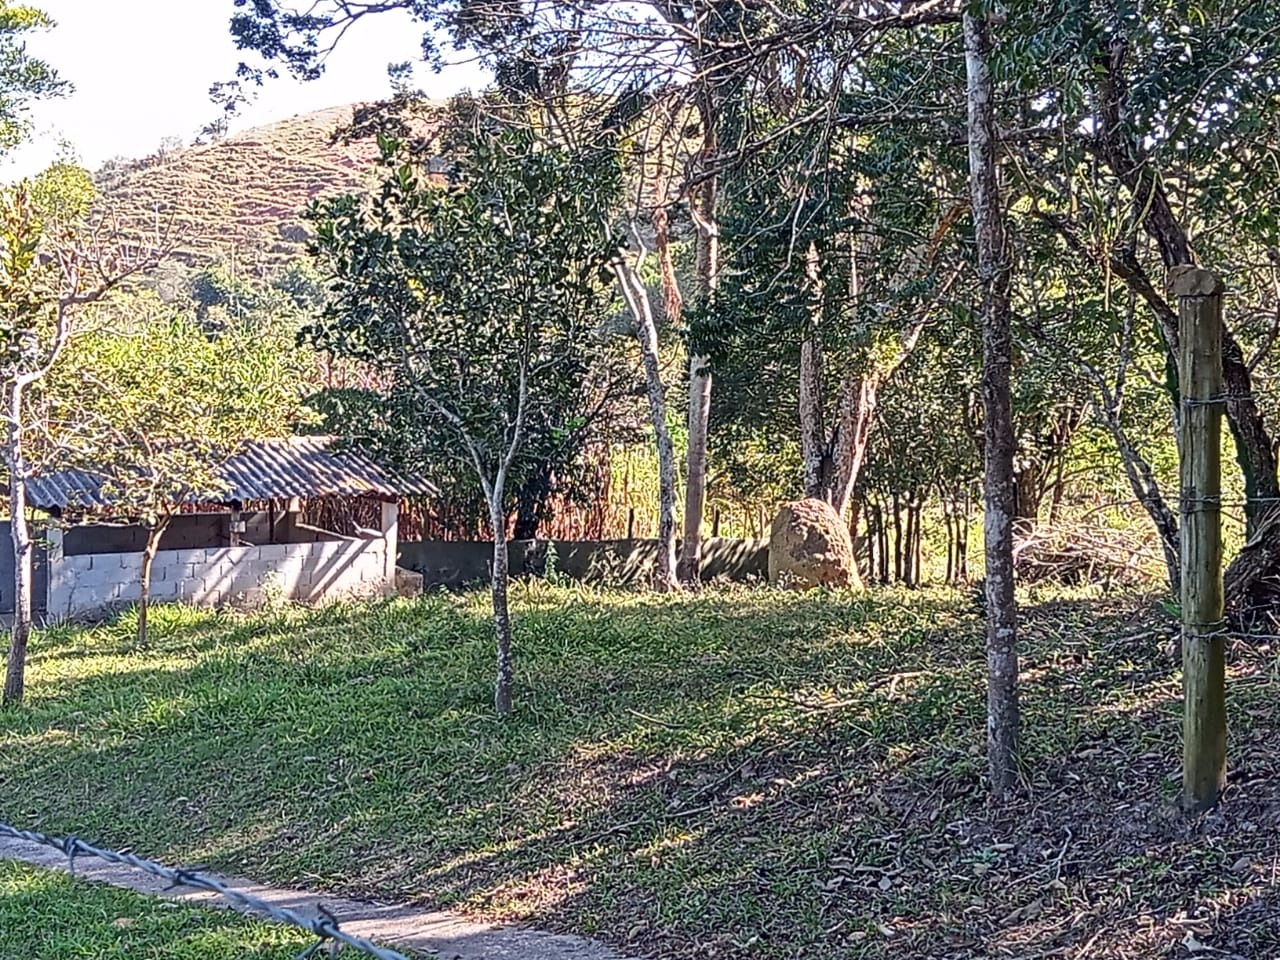 Chácara de 2 ha em São José dos Campos, SP